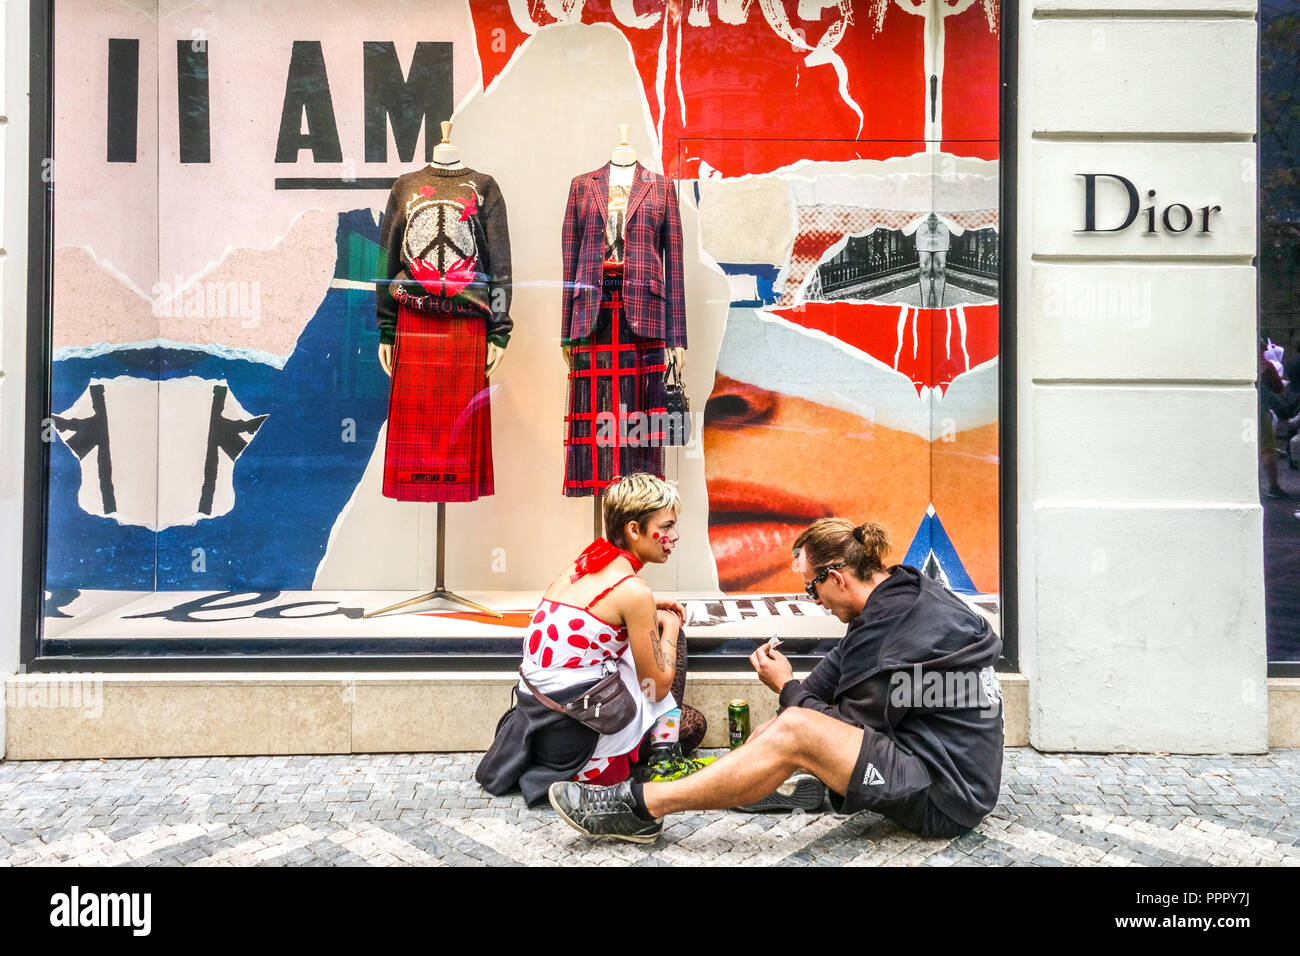 Jóvenes frente a la tienda Dior, calle Pařížská, tiendas en Praga, tienda de la República Checa Foto de stock